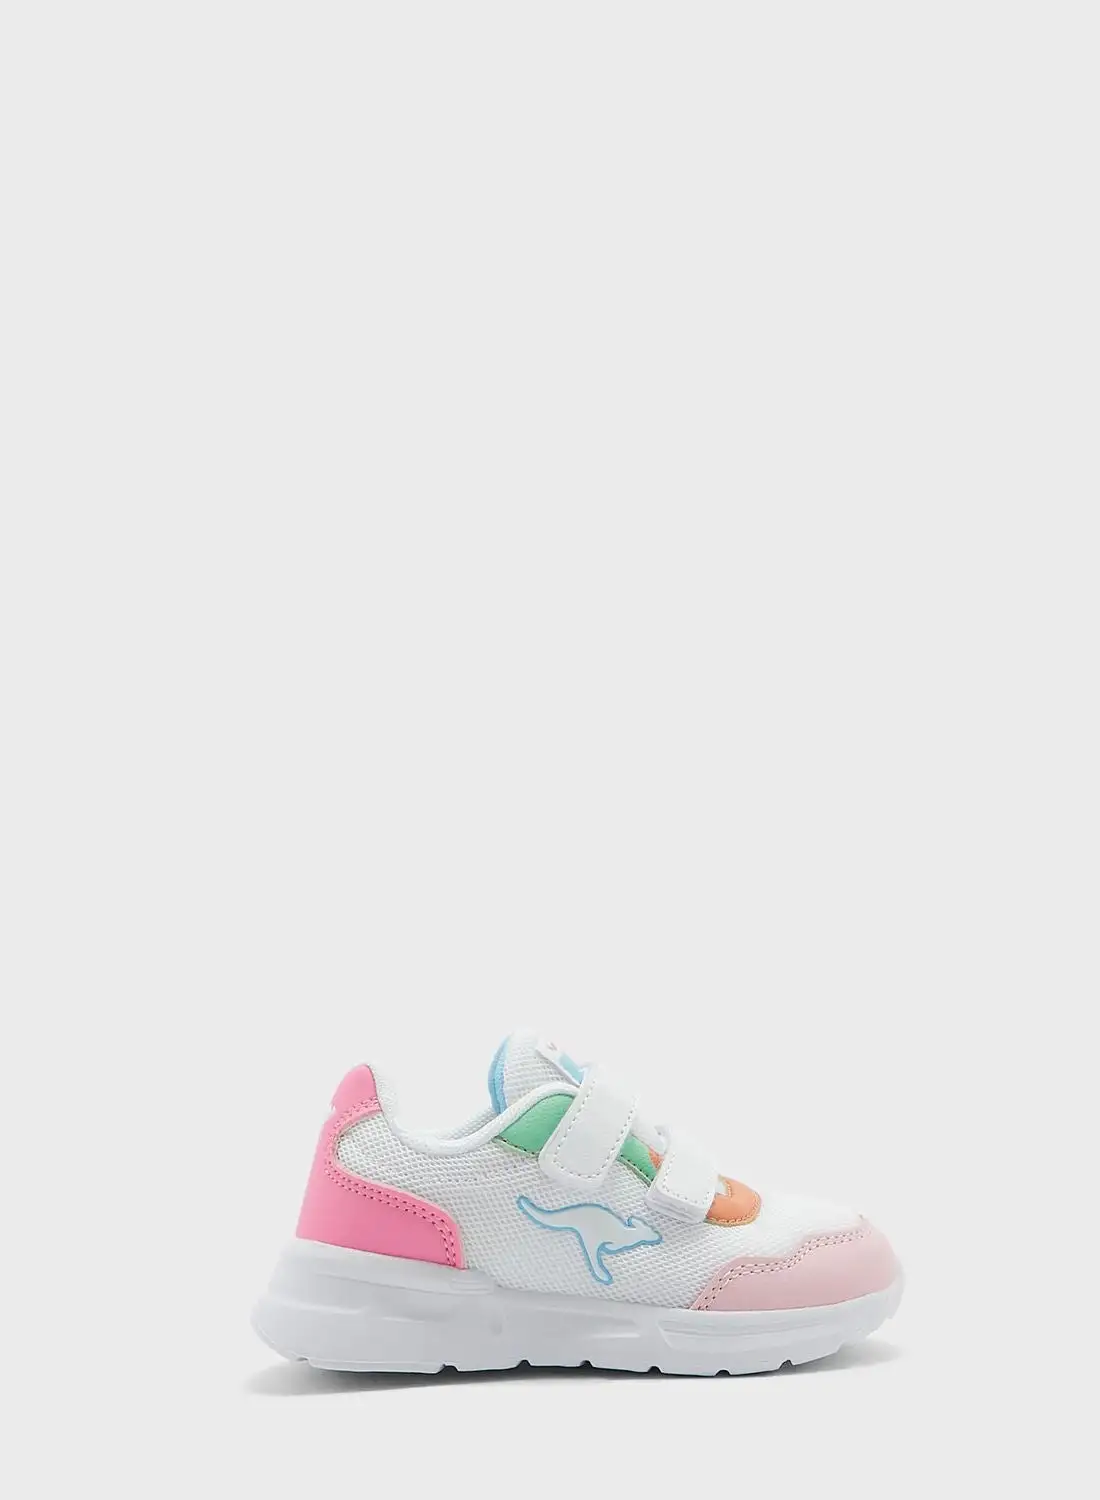 kangaROOS Infant Casual Sneakers